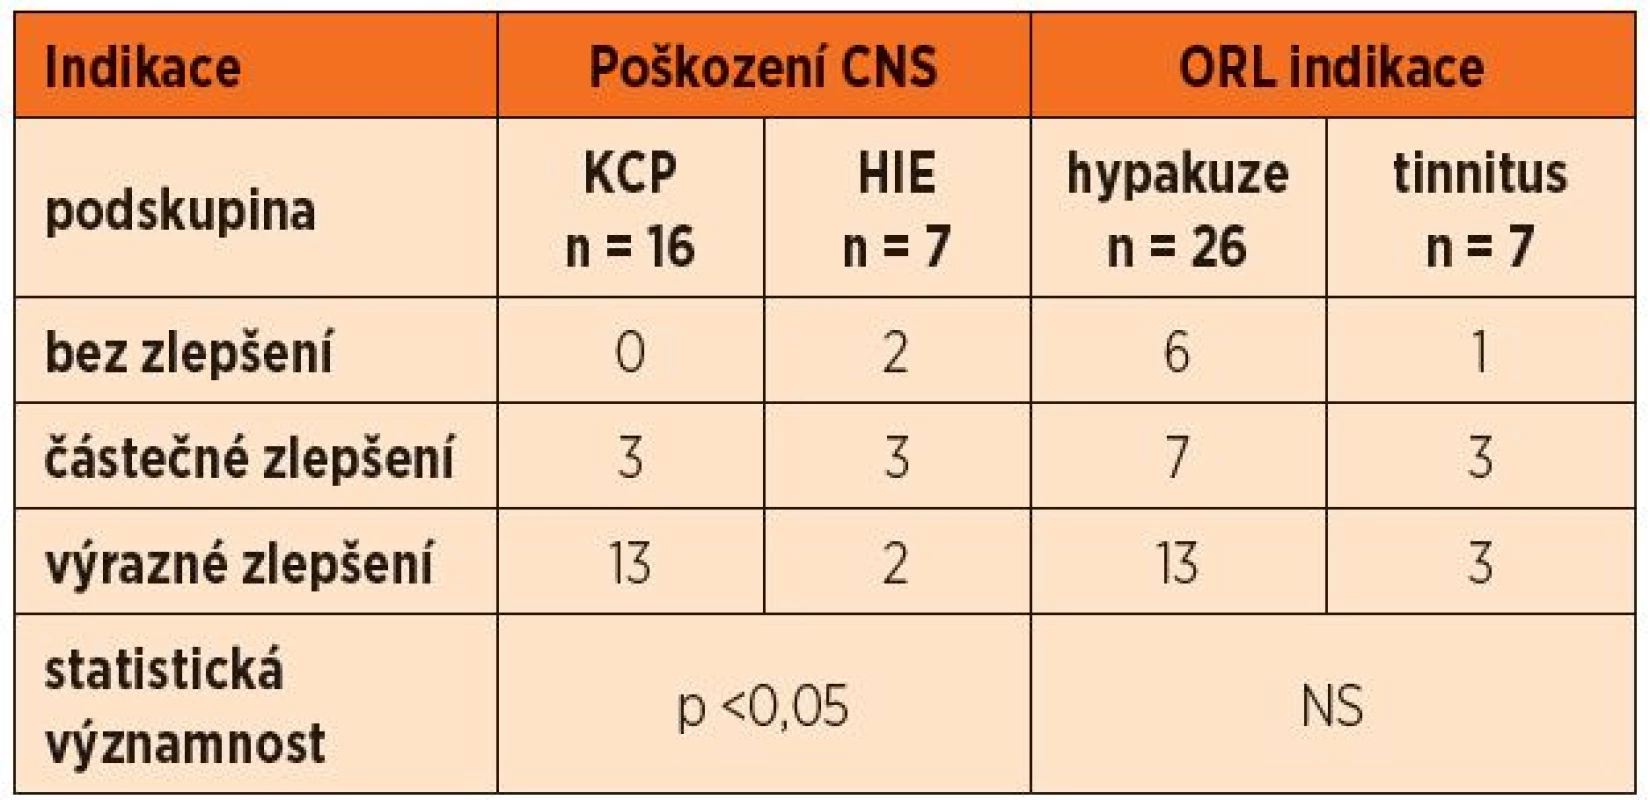 Hodnocení úrovně zlepšení zdravotního stavu u pacientů s poškozením CNS (traumatické poranění mozku – KCP a hypoxicko-ischemická encefalopatie – HIE) a ORL indikacemi (hypakuze a tinnitus).